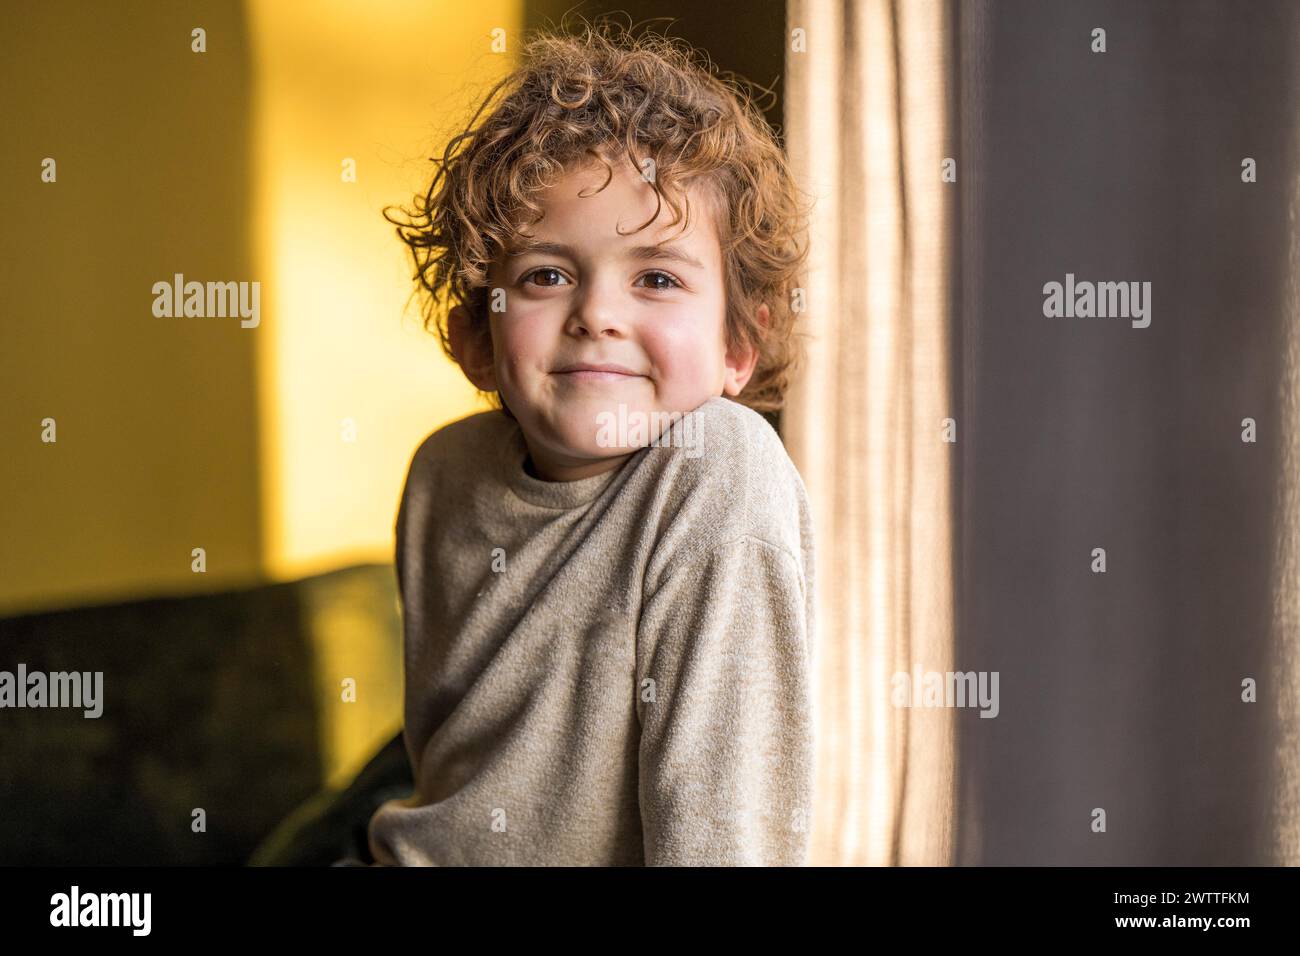 Un niño juguetón mirando desde detrás de una cortina con una sonrisa cálida. Foto de stock